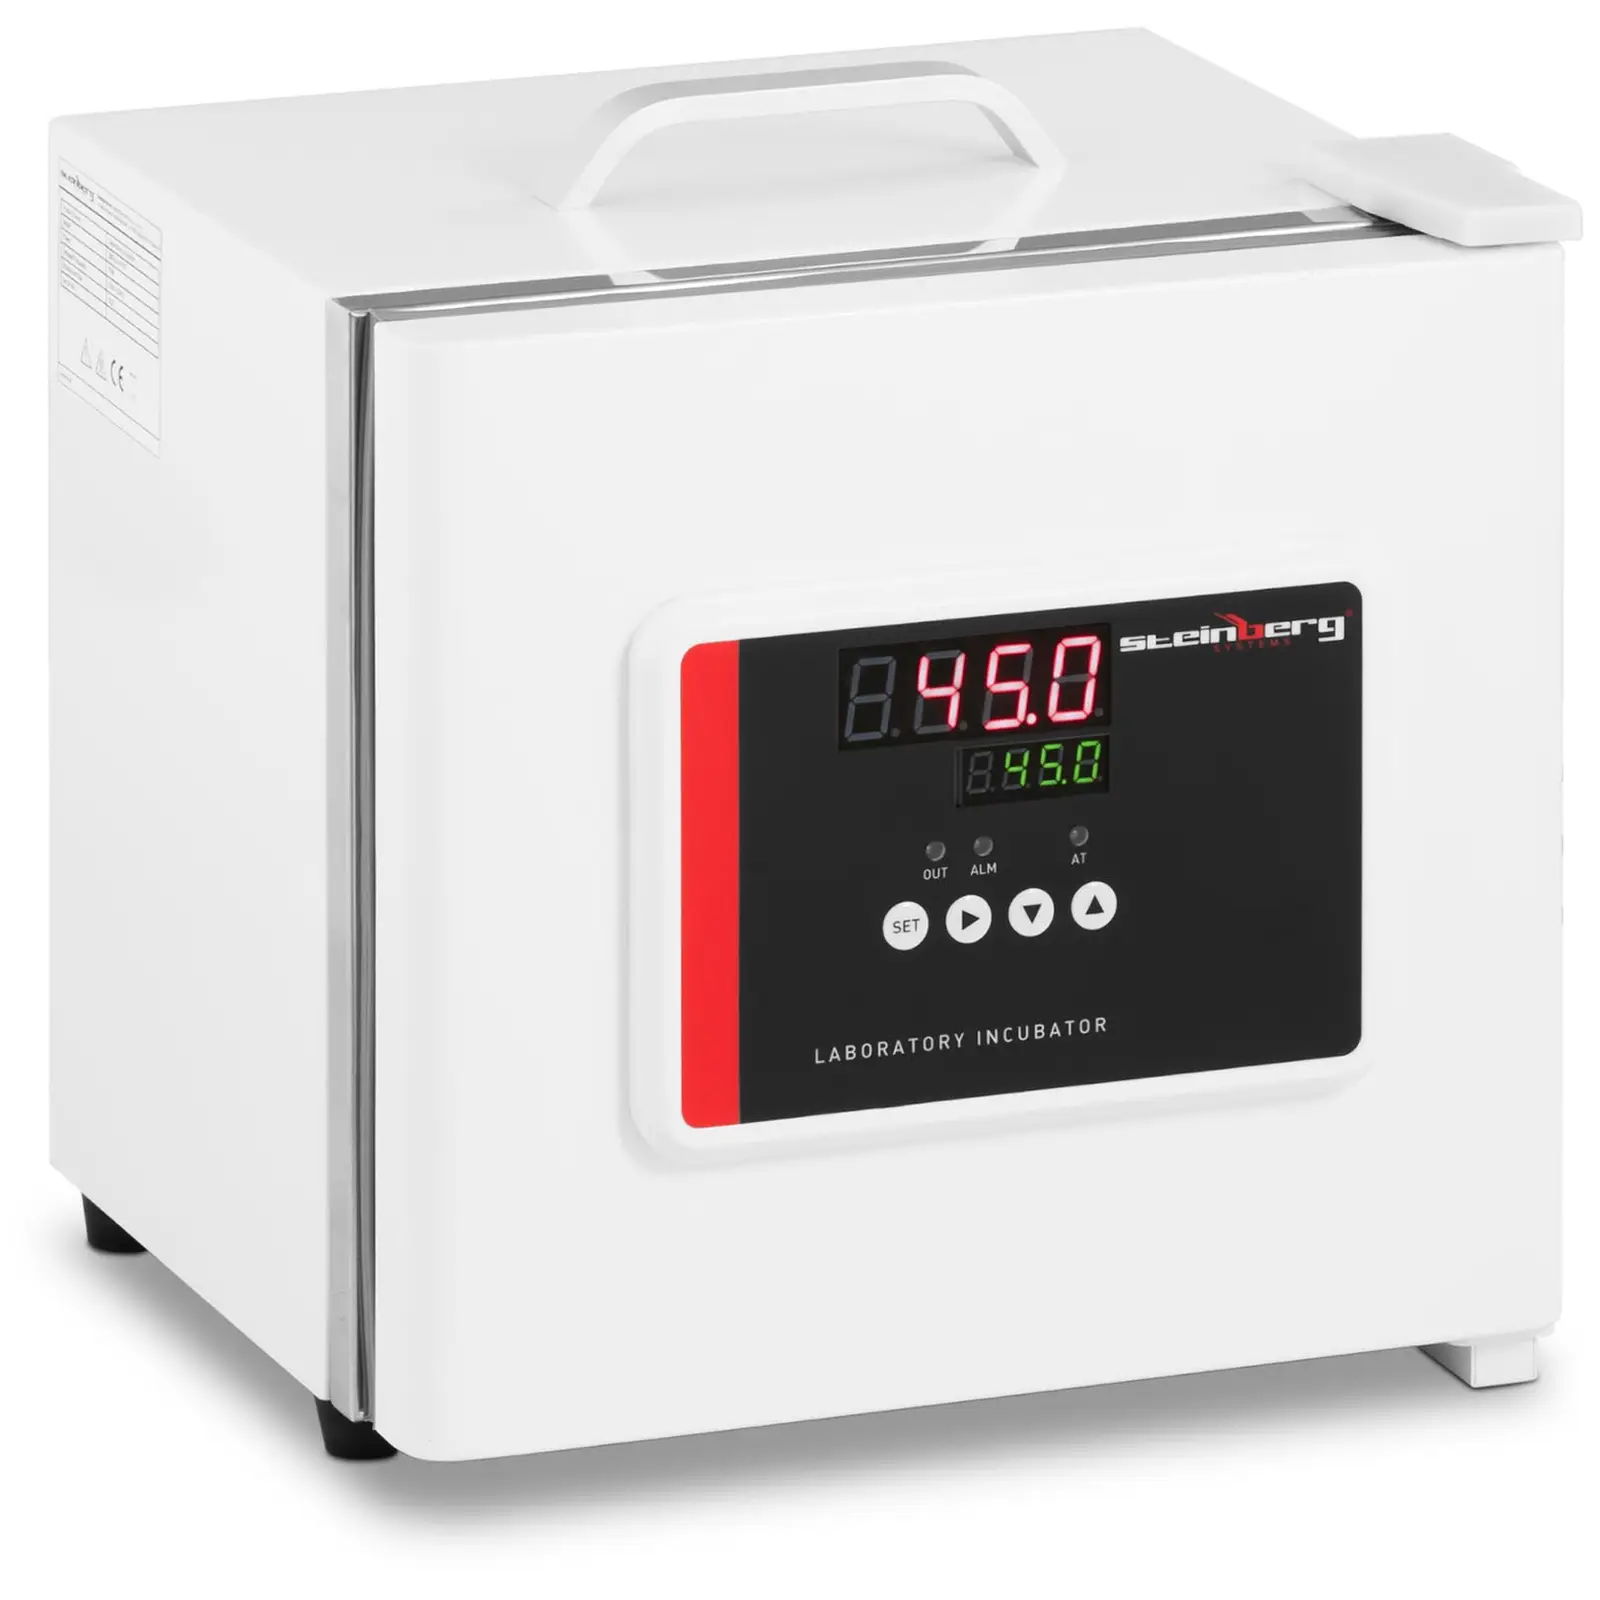 Laboratóriumi inkubátor - max. 45 °C-ig - 7,5 l